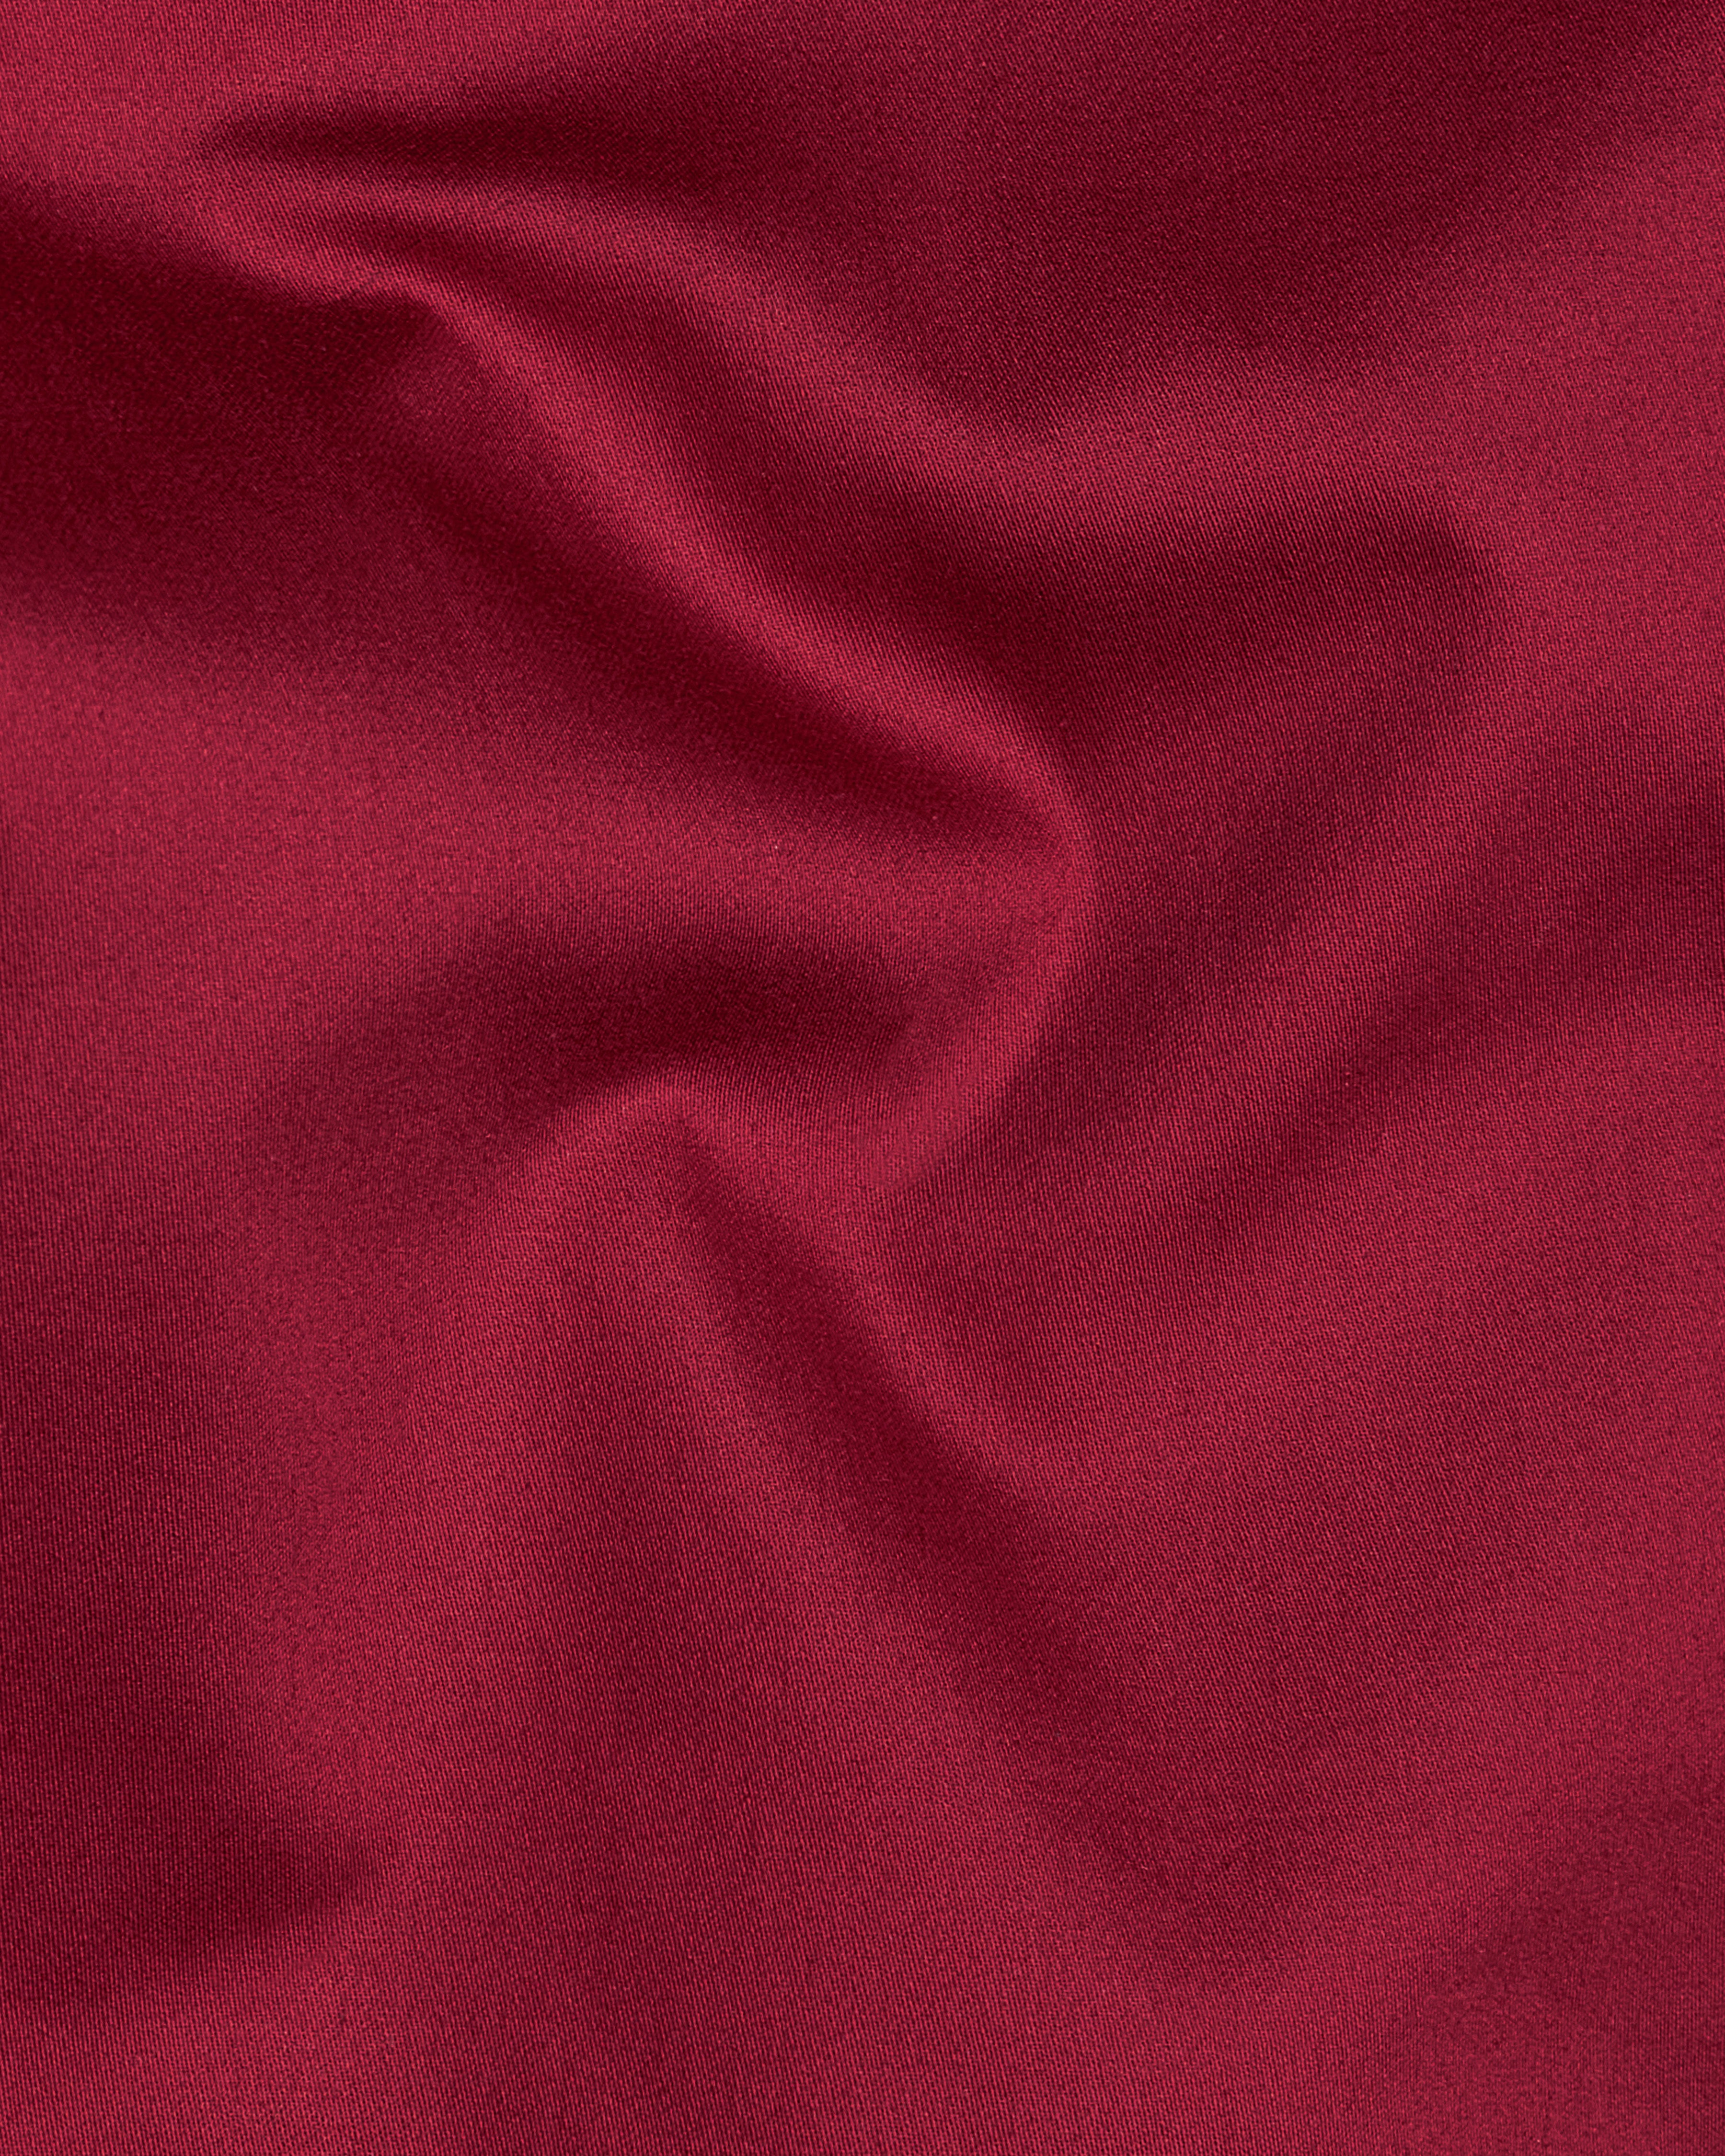 Vivid Auburn Red Subtle Sheen Super Soft Premium Cotton Shirt 8869-BLK-38, 8869-BLK-H-38, 8869-BLK-39, 8869-BLK-H-39, 8869-BLK-40, 8869-BLK-H-40, 8869-BLK-42, 8869-BLK-H-42, 8869-BLK-44, 8869-BLK-H-44, 8869-BLK-46, 8869-BLK-H-46, 8869-BLK-48, 8869-BLK-H-48, 8869-BLK-50, 8869-BLK-H-50, 8869-BLK-52, 8869-BLK-H-52